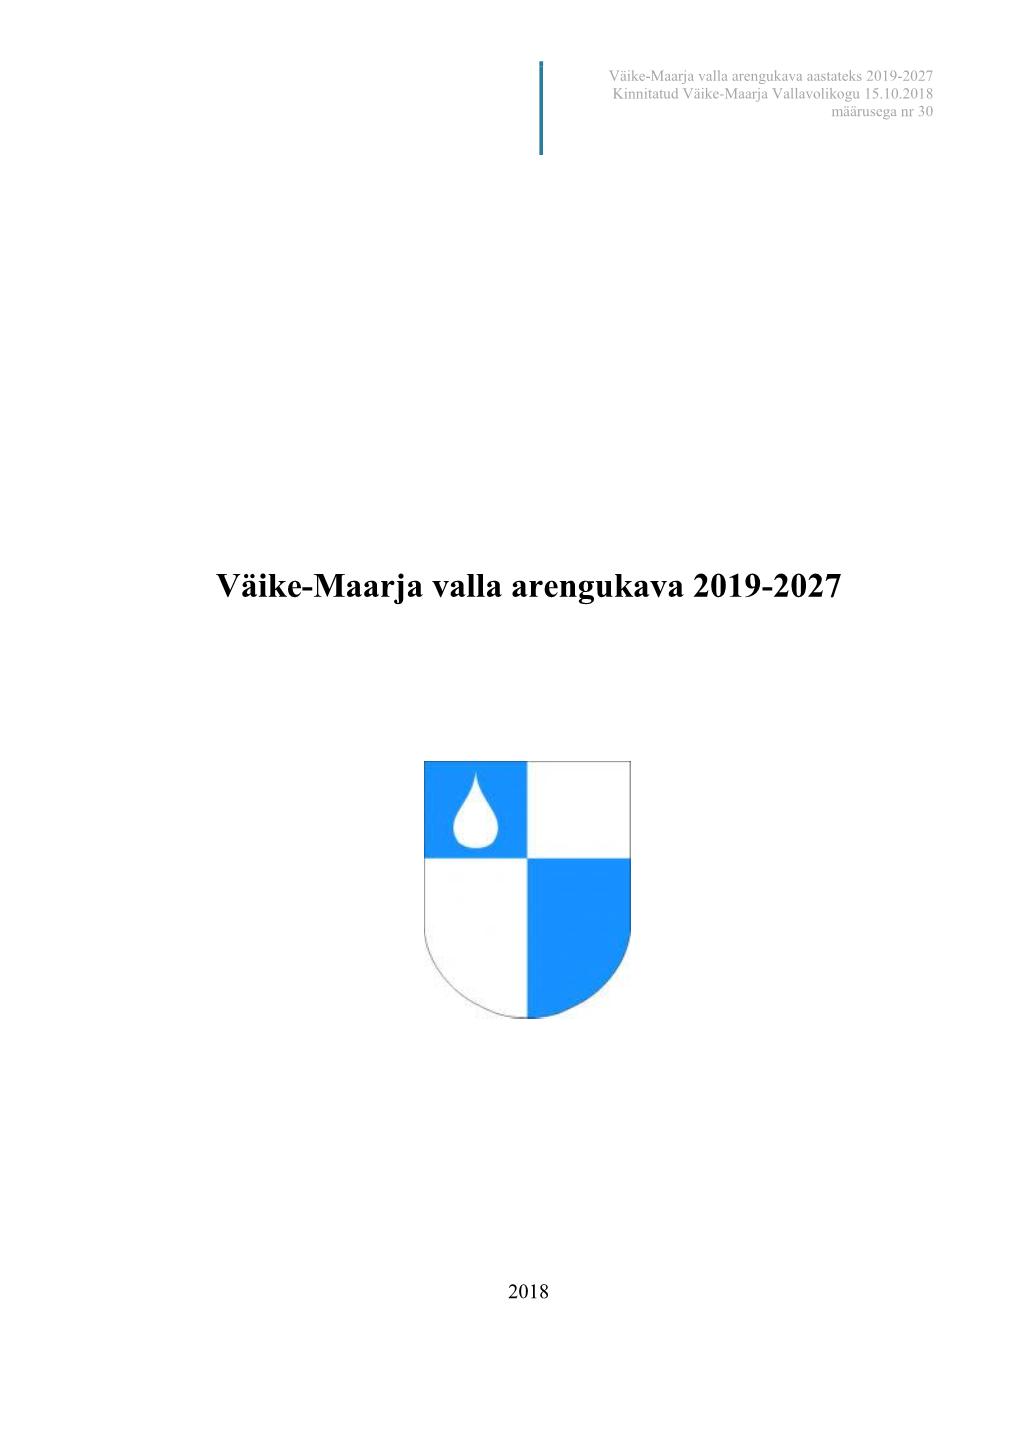 Väike-Maarja Valla Arengukava 2019-2027